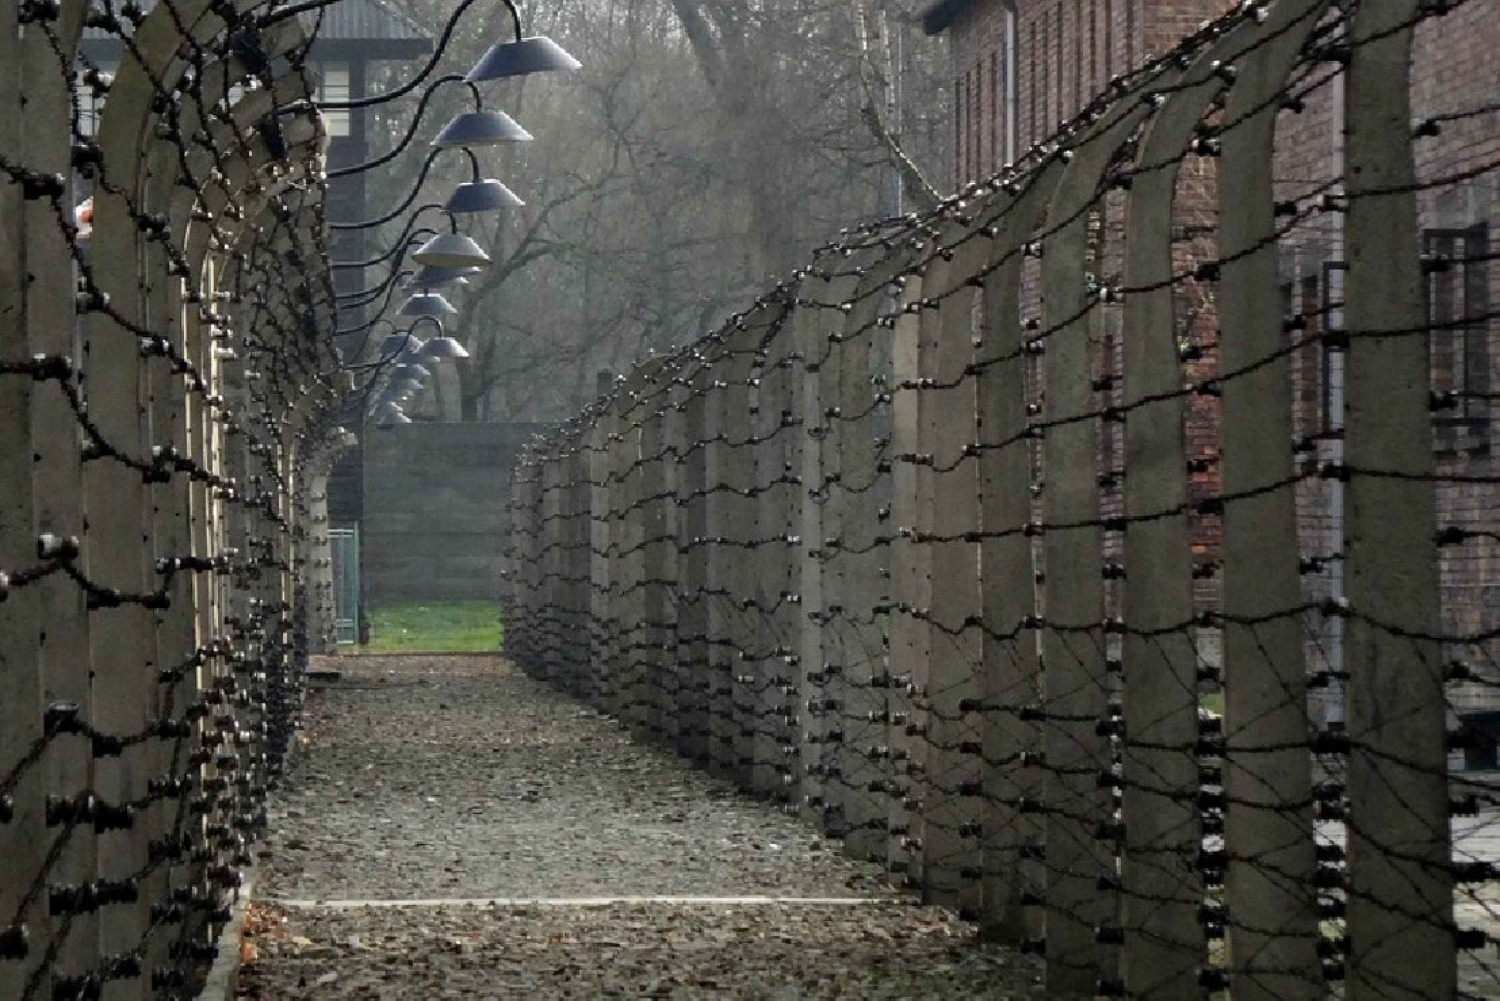 From Krakow: Private Transfer to Auschwitz-Birkenau